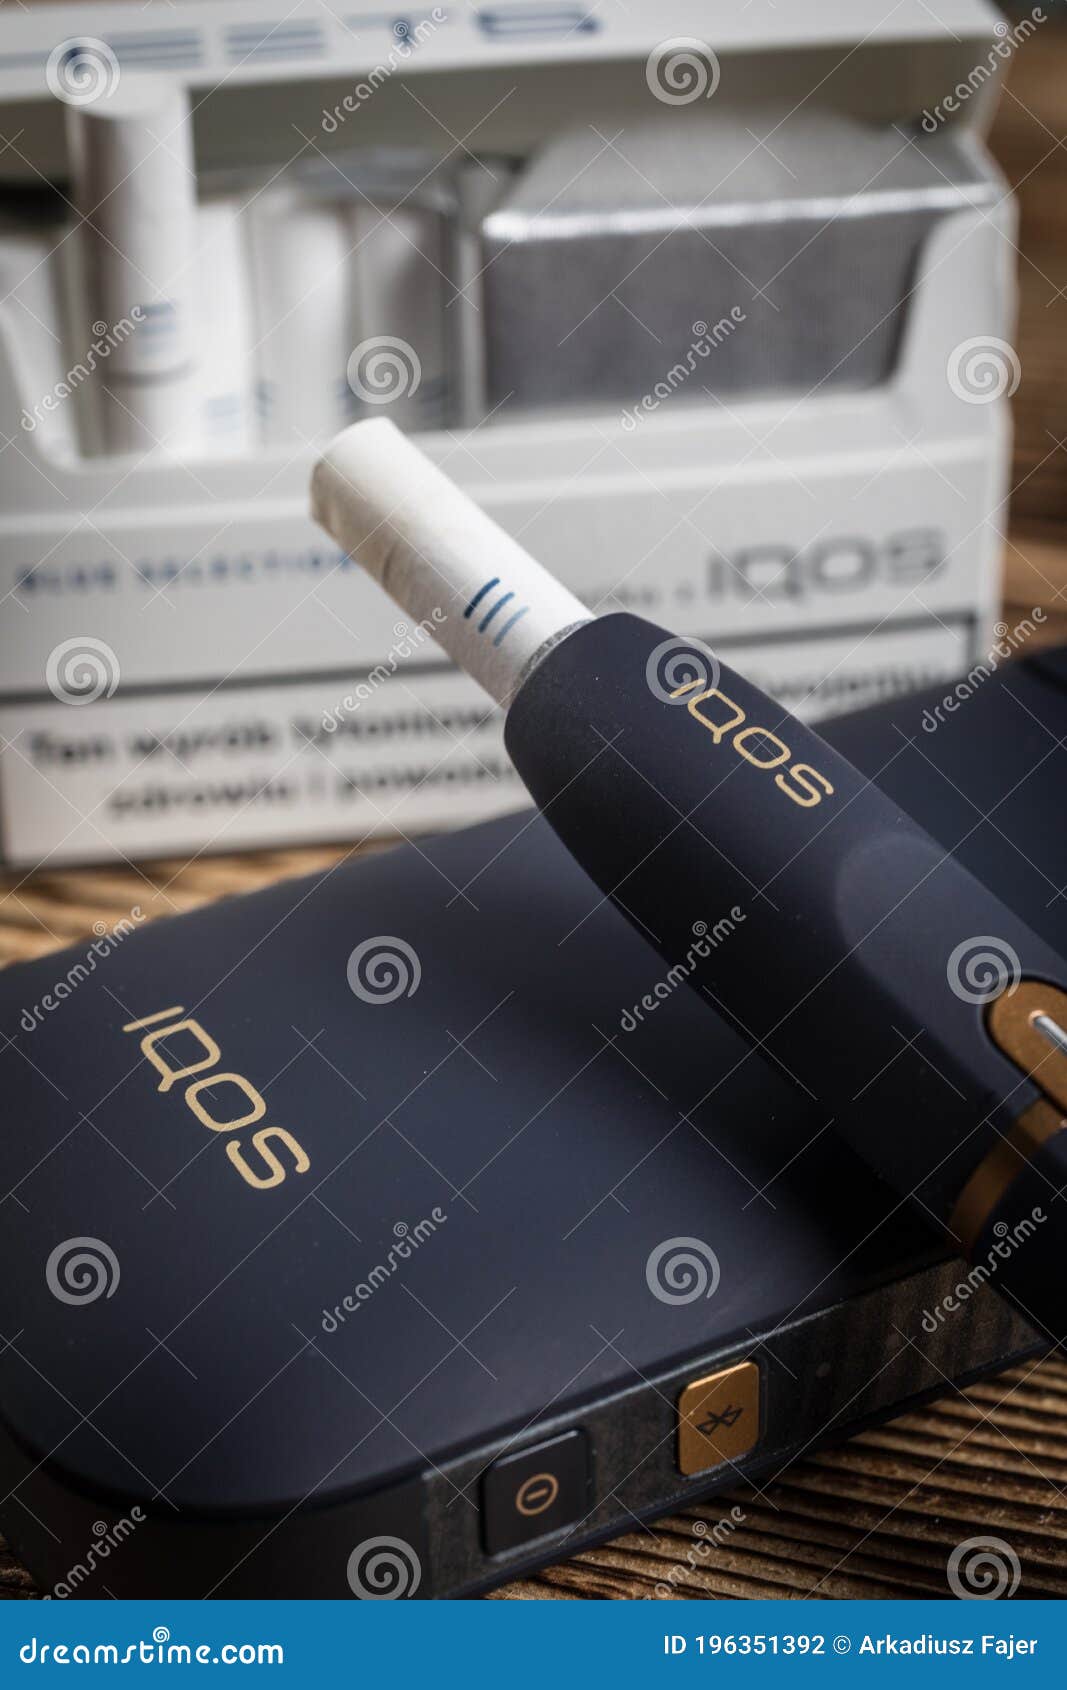 Système De Chauffage IQOS De Tabac Technologies De Produits Du Tabac D'IQOS  Philip Morris Photographie éditorial - Image du menthol, tabac: 196351392